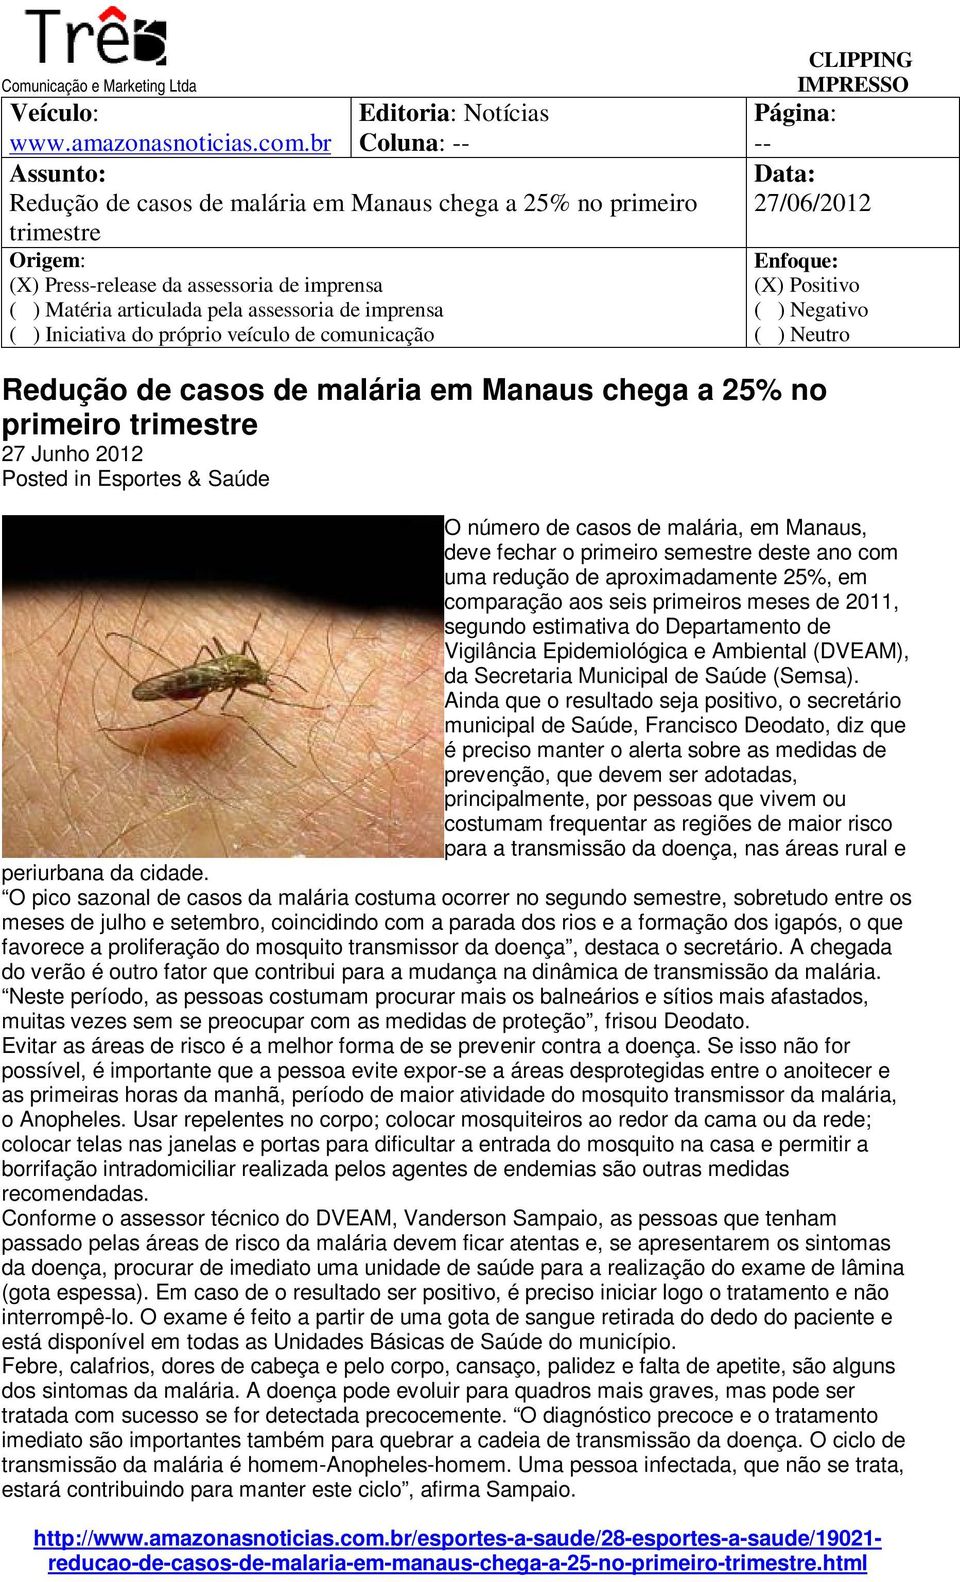 de casos de malária, em Manaus, deve fechar o primeiro semestre deste ano com uma redução de aproximadamente 25%, em comparação aos seis primeiros meses de 2011, segundo estimativa do Departamento de